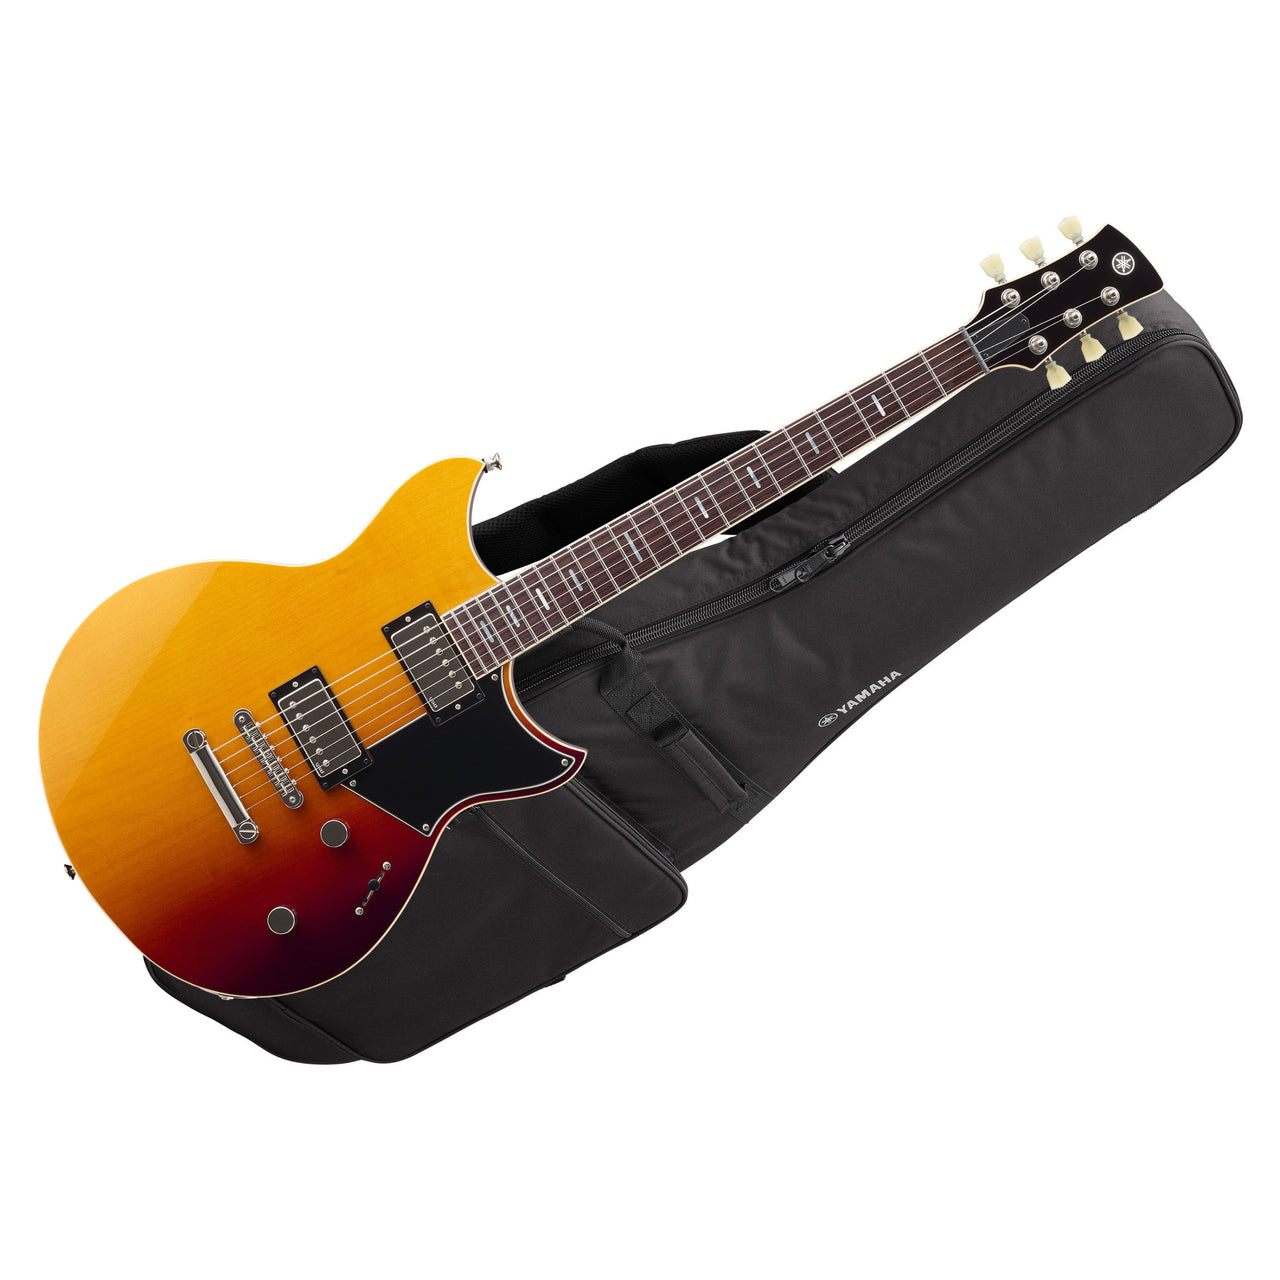 Guitarra Electrica Yamaha Revstar Standard Sunset Burst, Rss20ssb